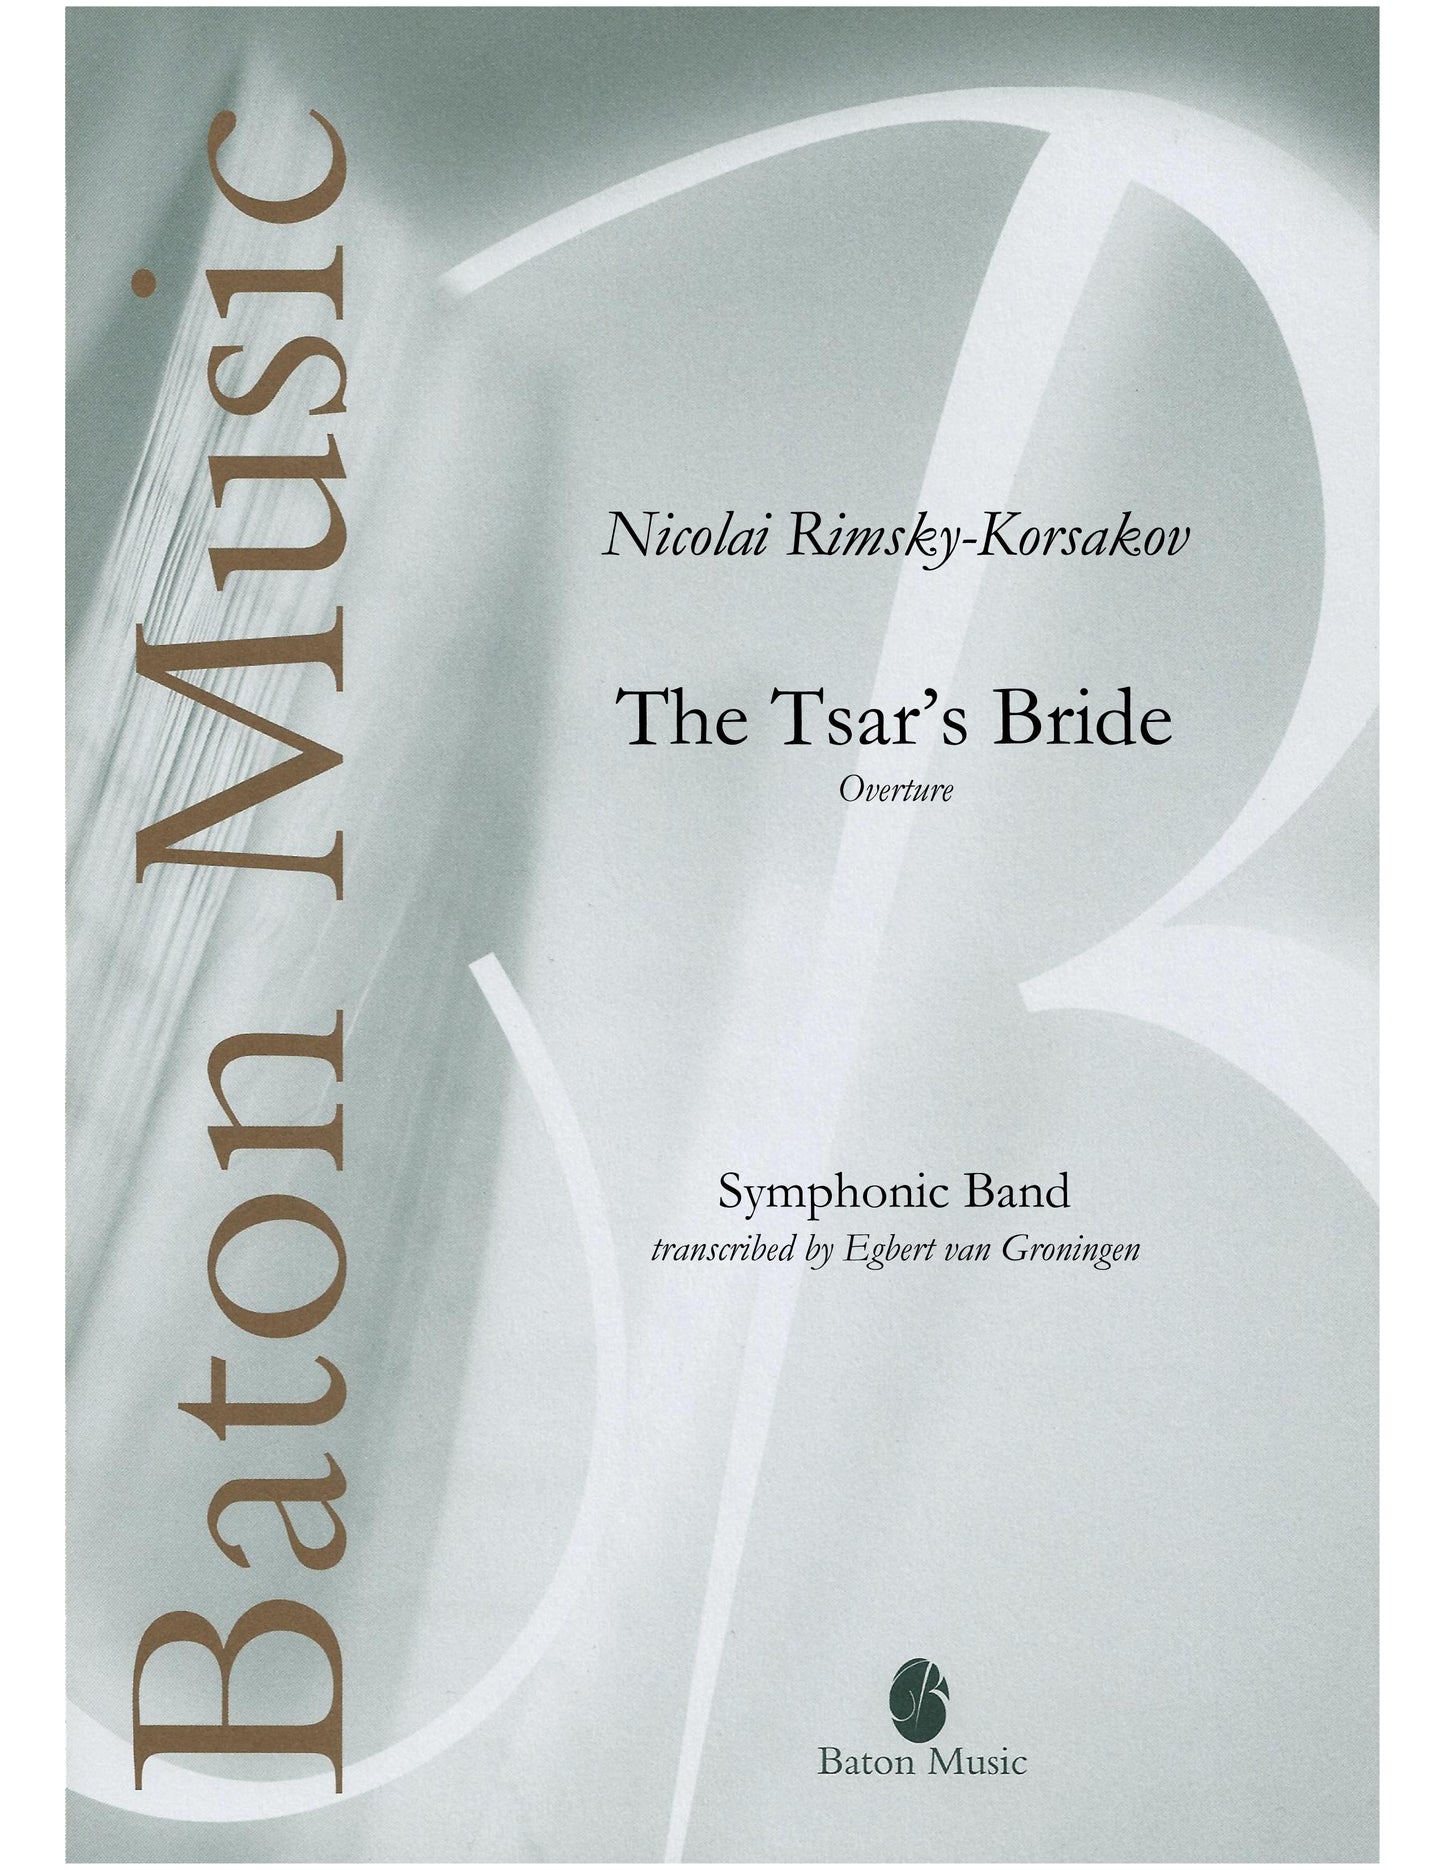 The Tsar's Bride (Overture) - Rimsky-Korsakov